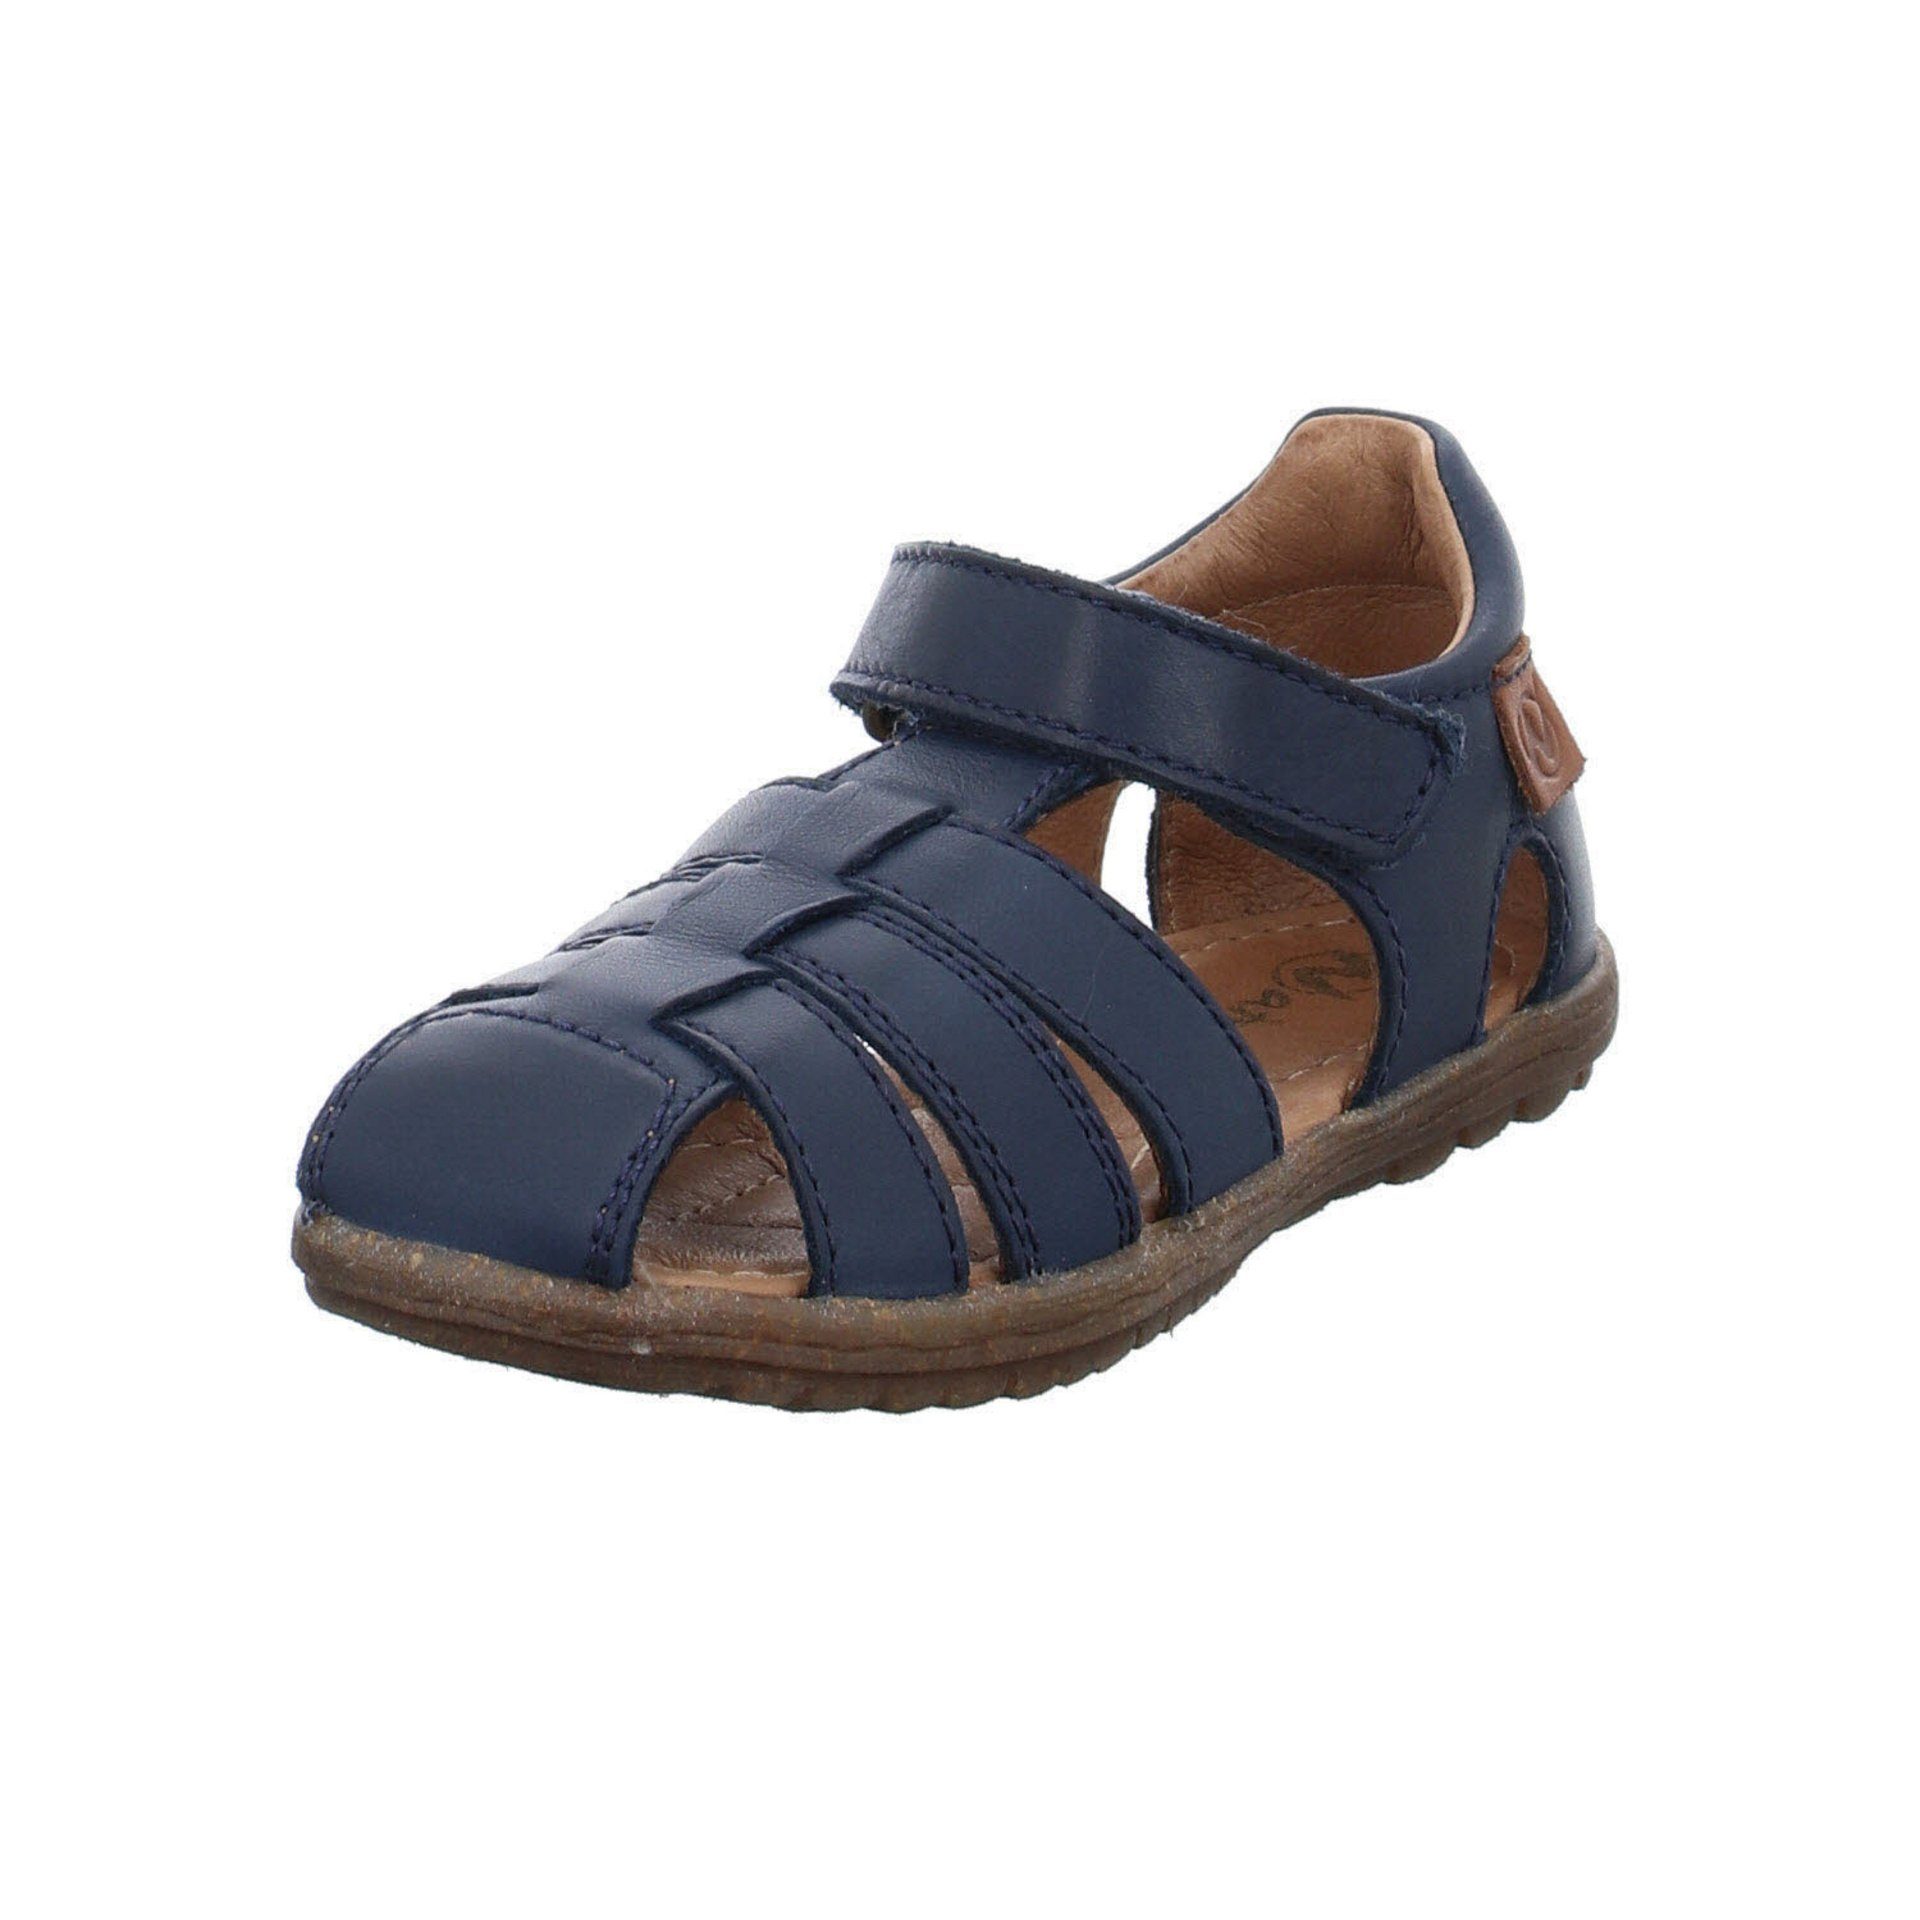 Naturino »Jungen Sandalen Schuhe See Sandale Kinderschuhe« Sandale  Glattleder online kaufen | OTTO